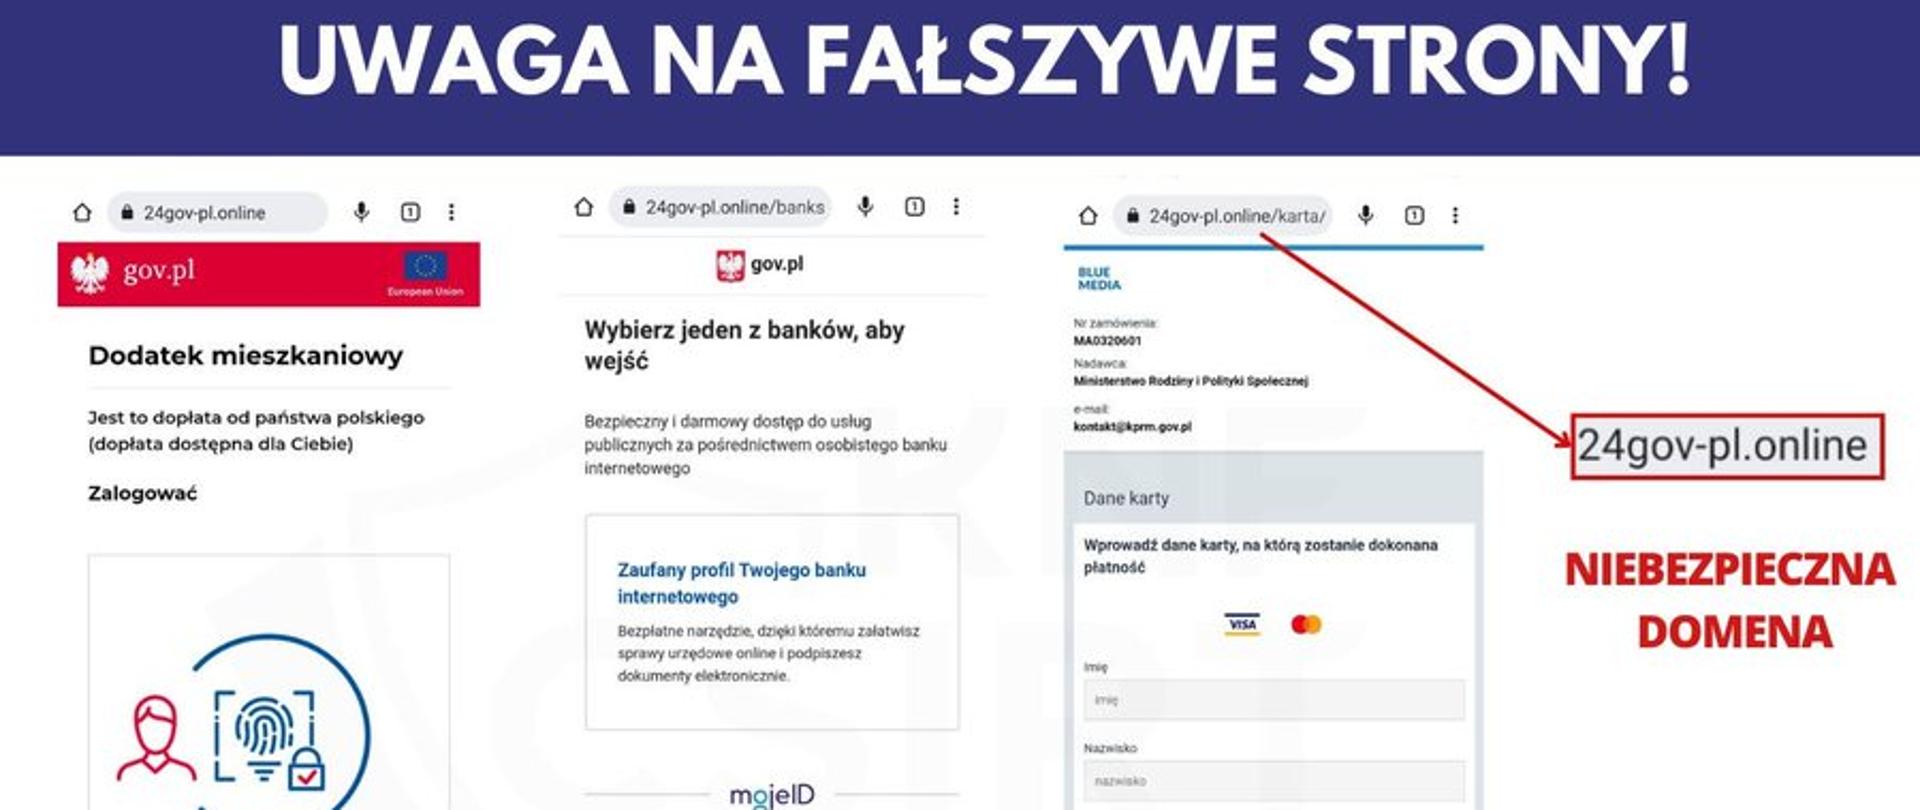 Zdjęcie stron podszywających się pod portal gov.pl 